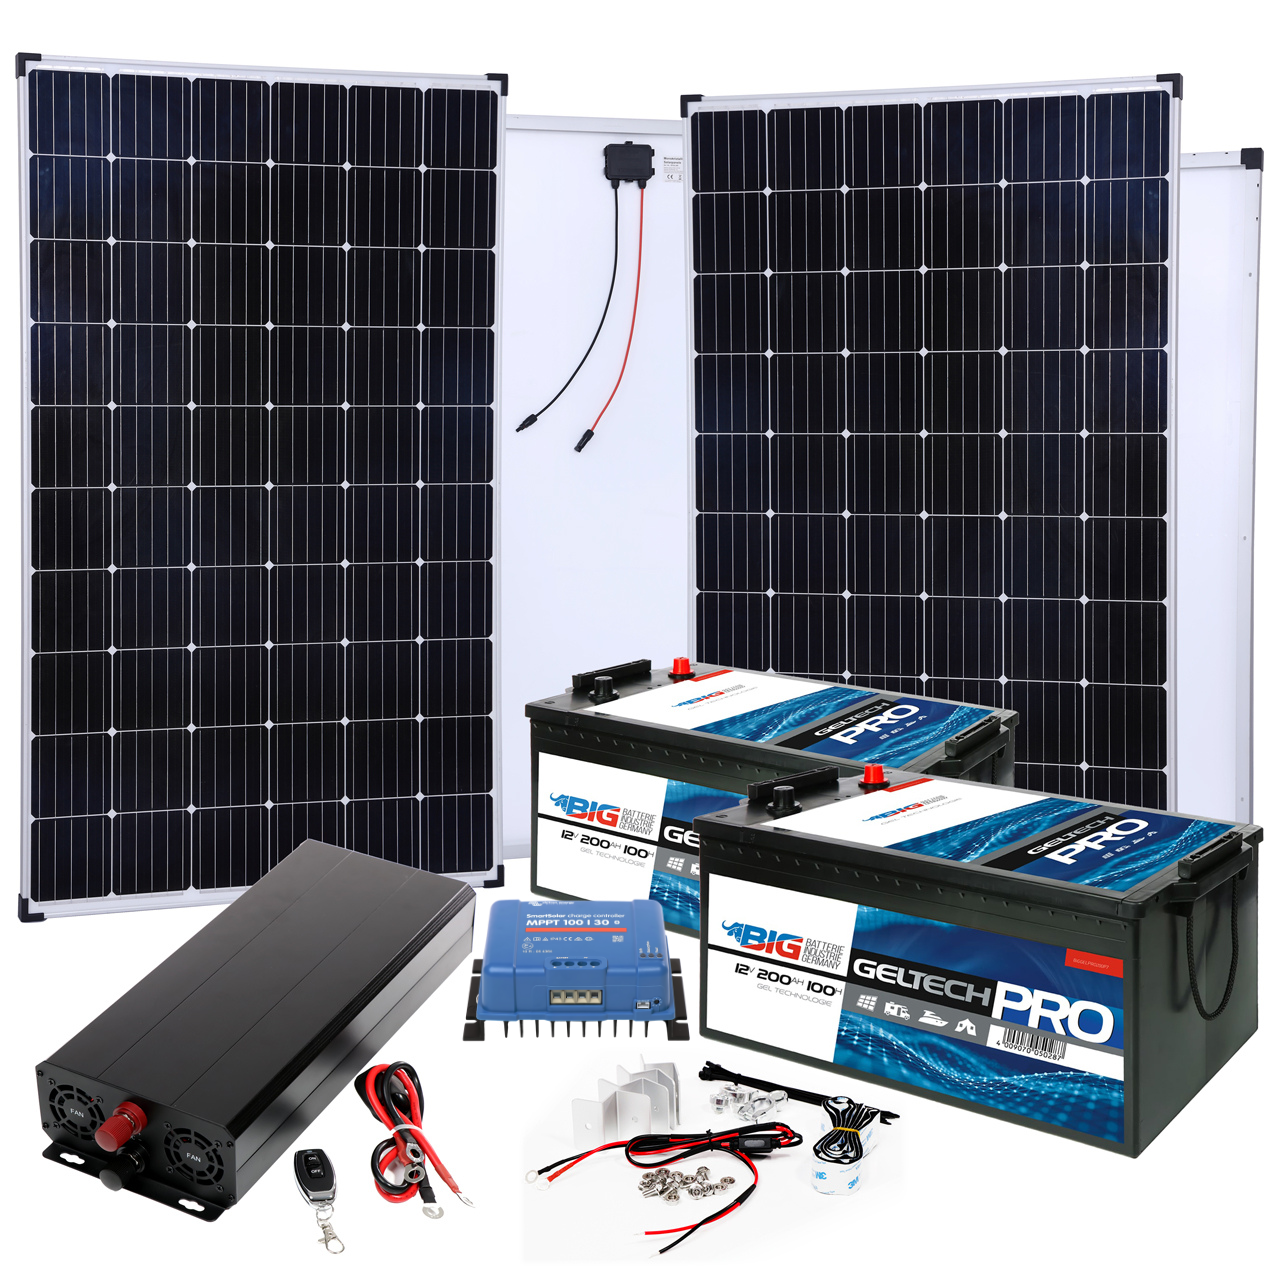 Solar Inselanlagen mit Wechselrichter zur autarken Stromversorgung